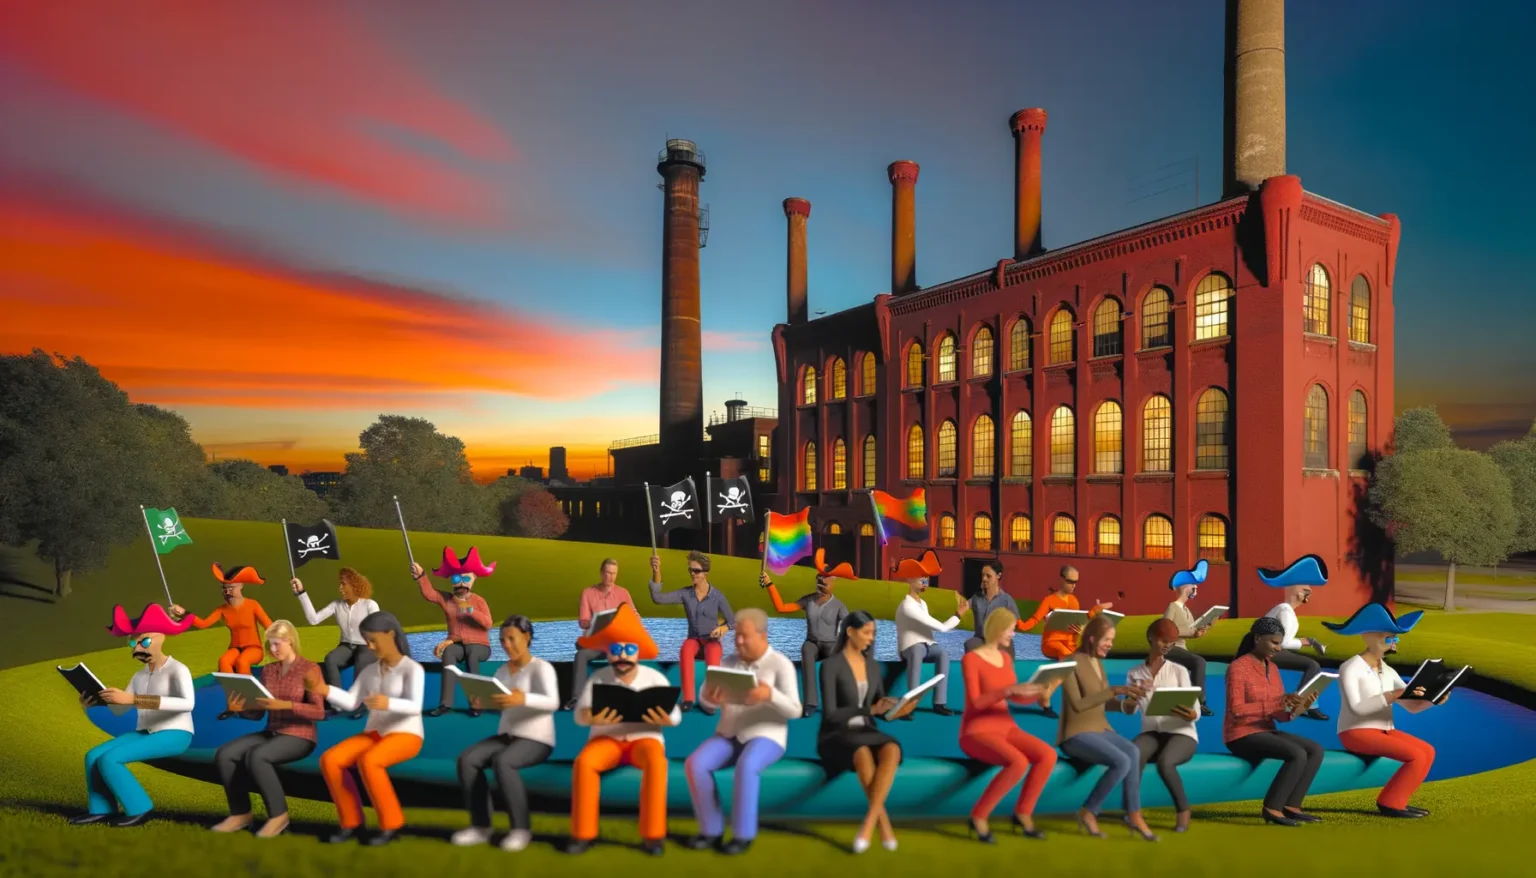 Eine bunt gemischte Gruppe von animierten Charakteren, die menschliche Züge aufweisen, sitzt auf einer Wiese vor einem industriellen Backsteingebäude mit hohen Schornsteinen. Die Charaktere tragen abstrakte, farbenfrohe Kleidung und Hüte und scheinen in verschiedene Aktivitäten vertieft zu sein, wie das Lesen von Büchern und das Schwenken von Flaggen mit Piratenmotiven und Regenbogenfarben. Der Himmel im Hintergrund zeigt ein lebhaftes Farbspiel von Orange, Rot und Blau zur Dämmerung.